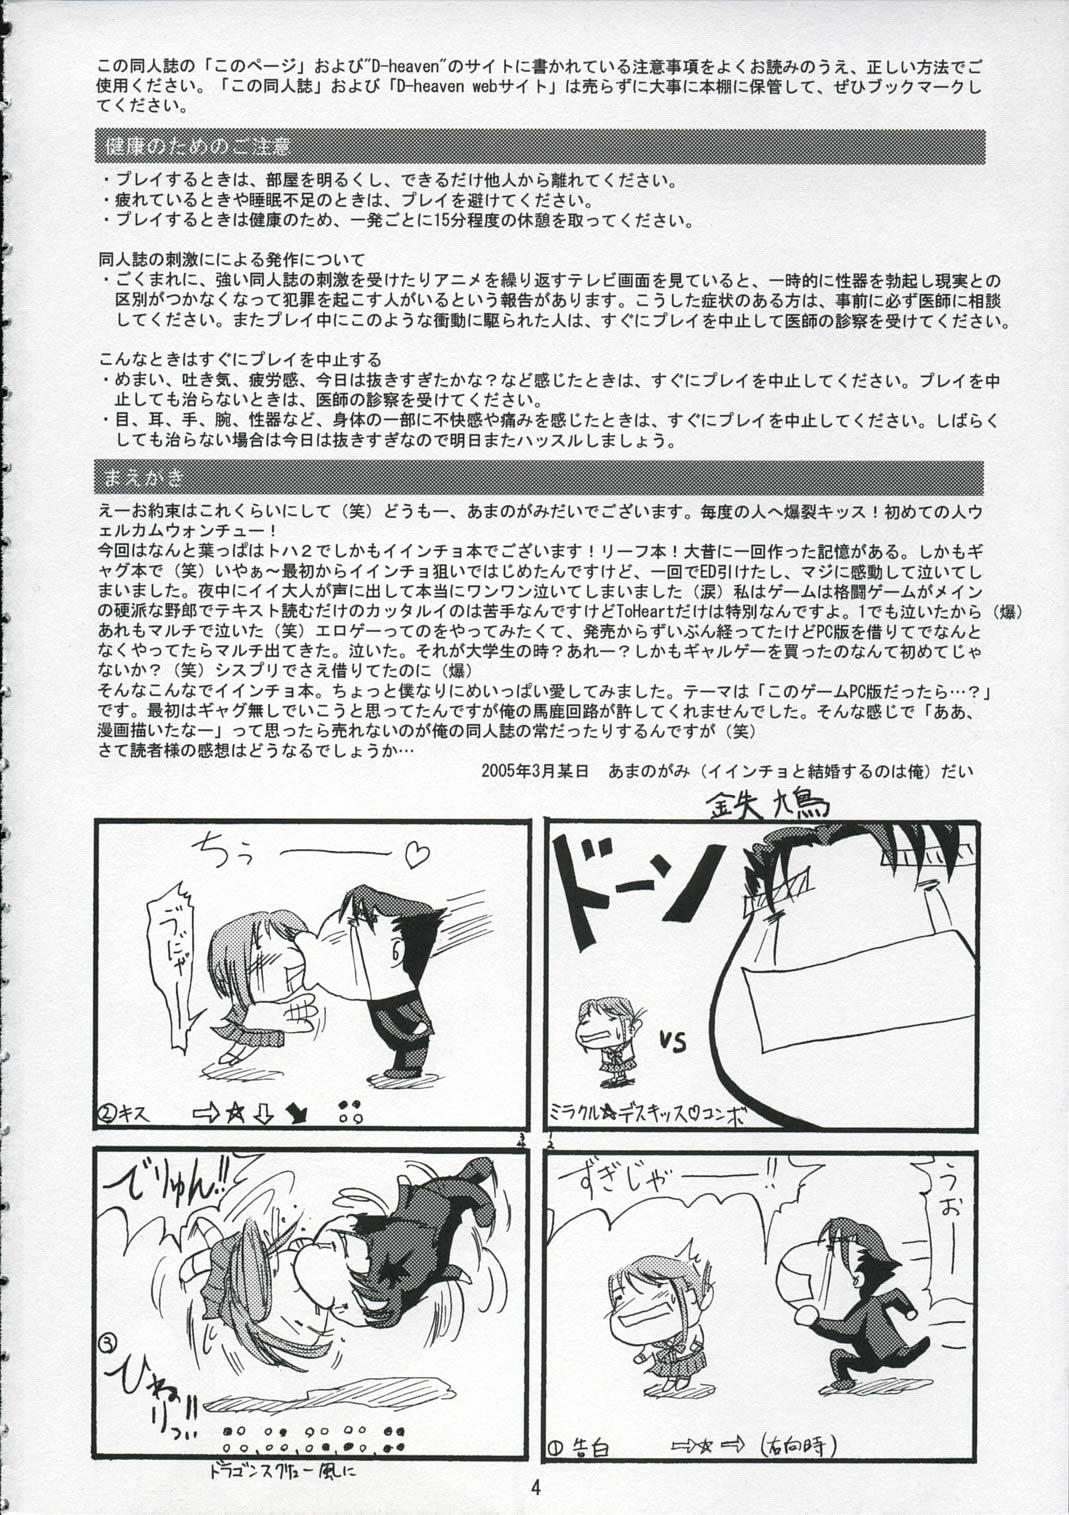 Nasty DoHearts 1 Onegai Iincho - Toheart2 Twink - Page 3